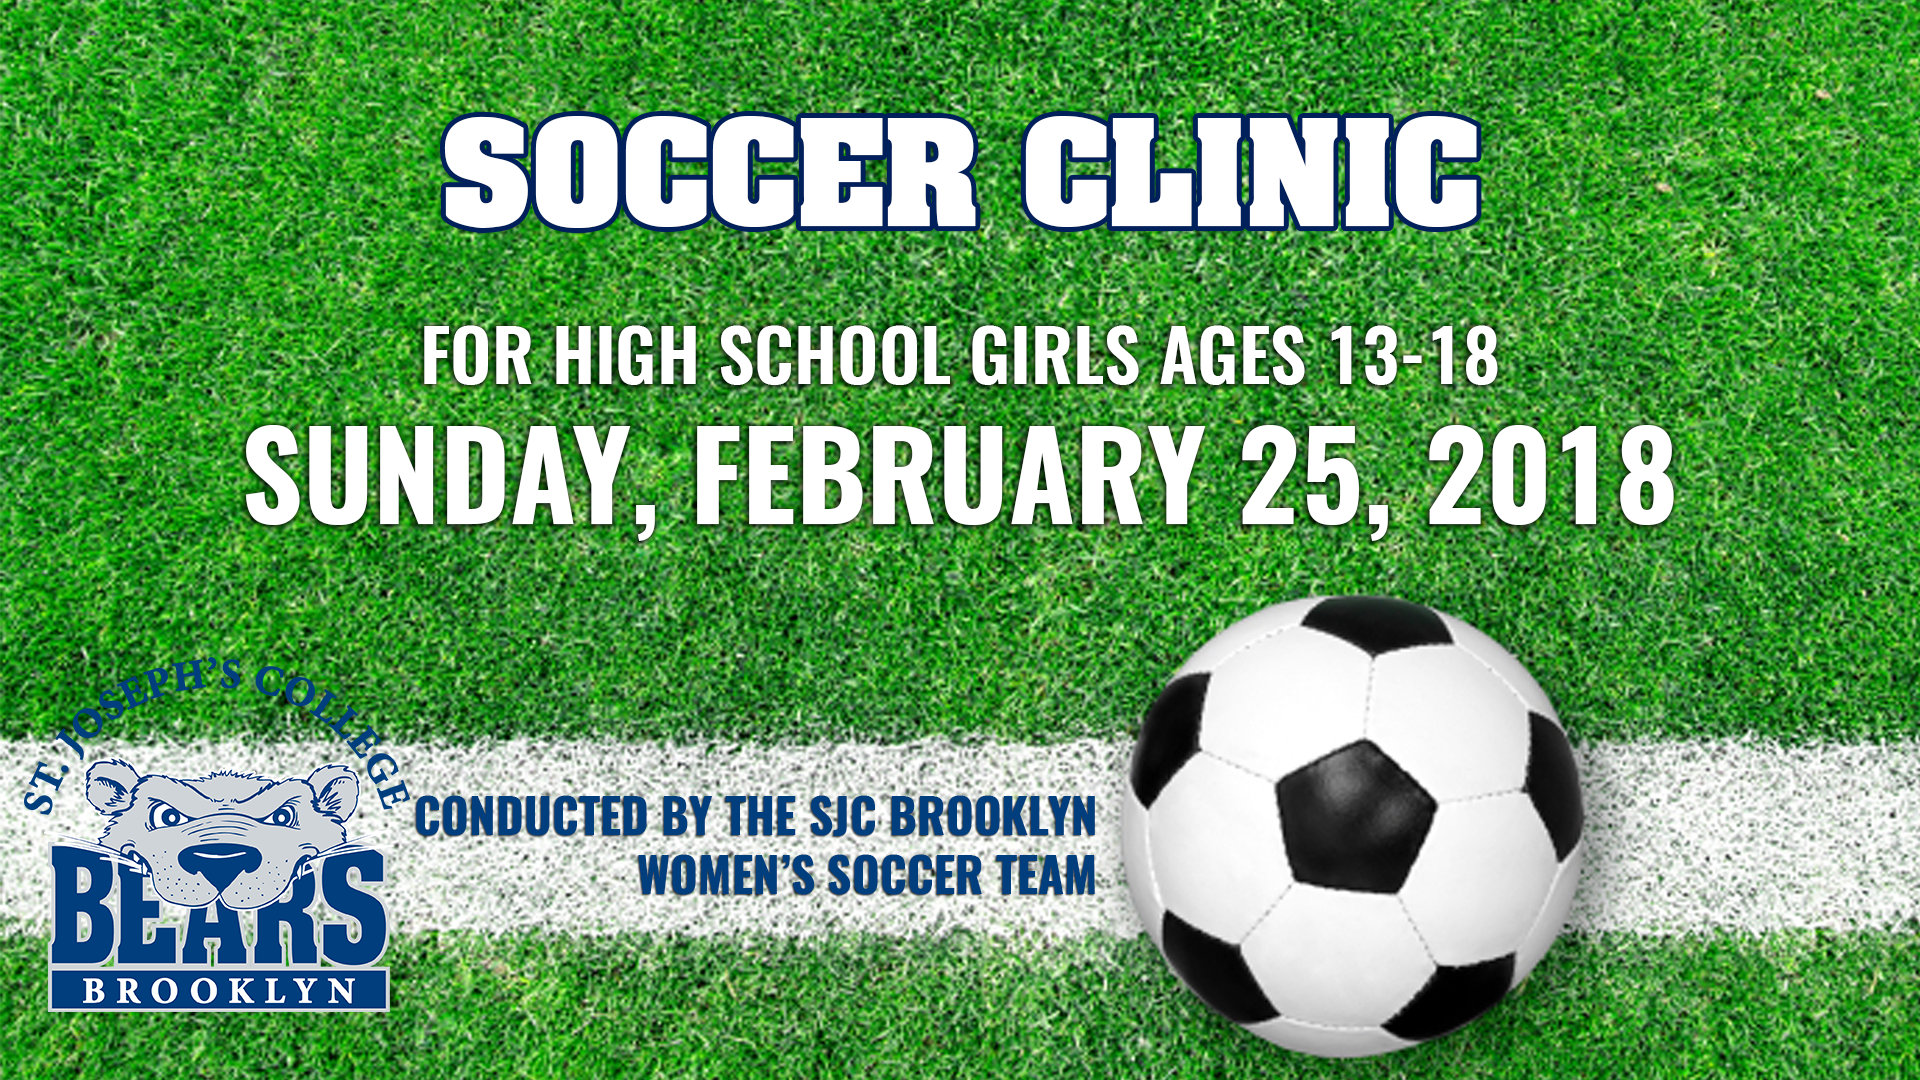 Women's Soccer Team To Host Clinic for High School Girls